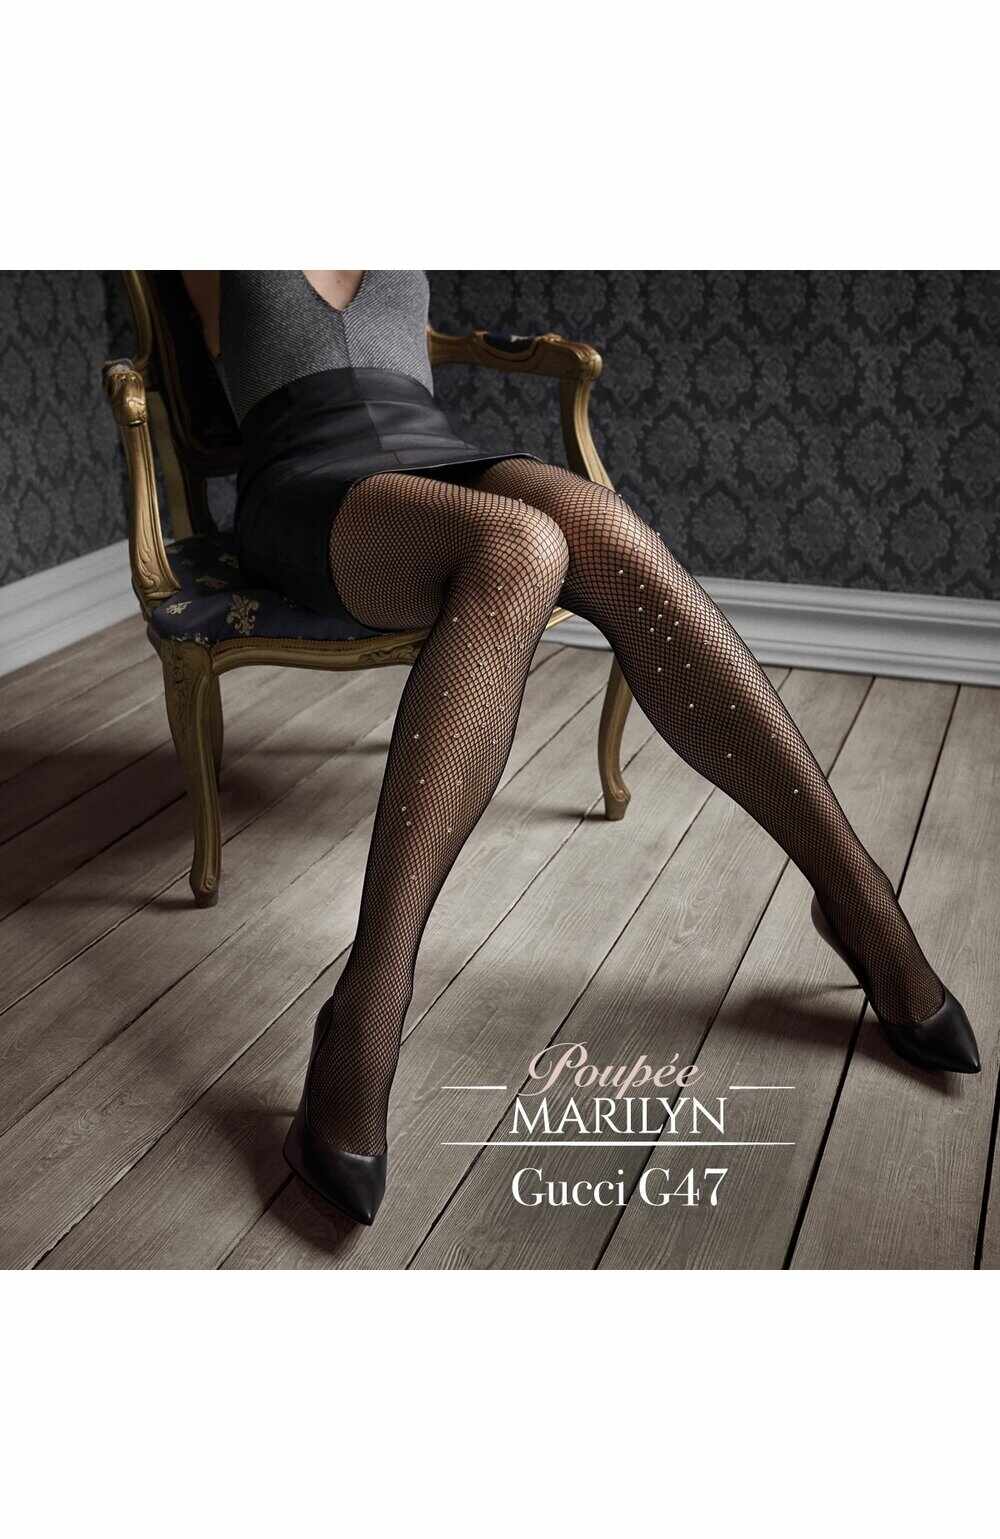 Ciorapi plasa cu cristale, colectia de lux Patrizia GUCCI for Marilyn G47